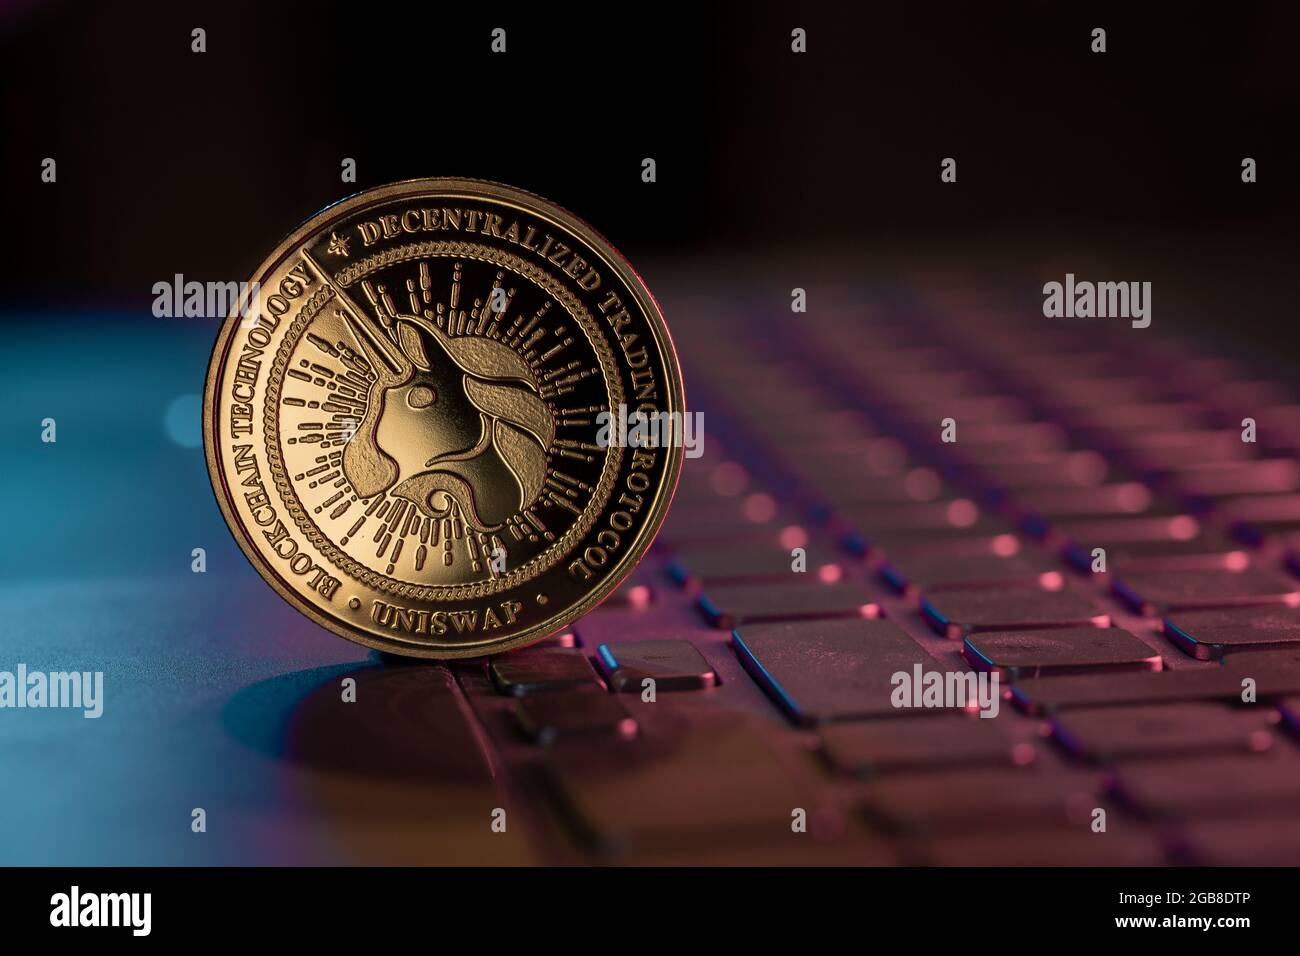 Uniswap UNI Kryptowährung physische Münze, die auf der Laptop-Tastatur platziert und mit aqua- und violetten Leuchten beleuchtet wird Stockfoto